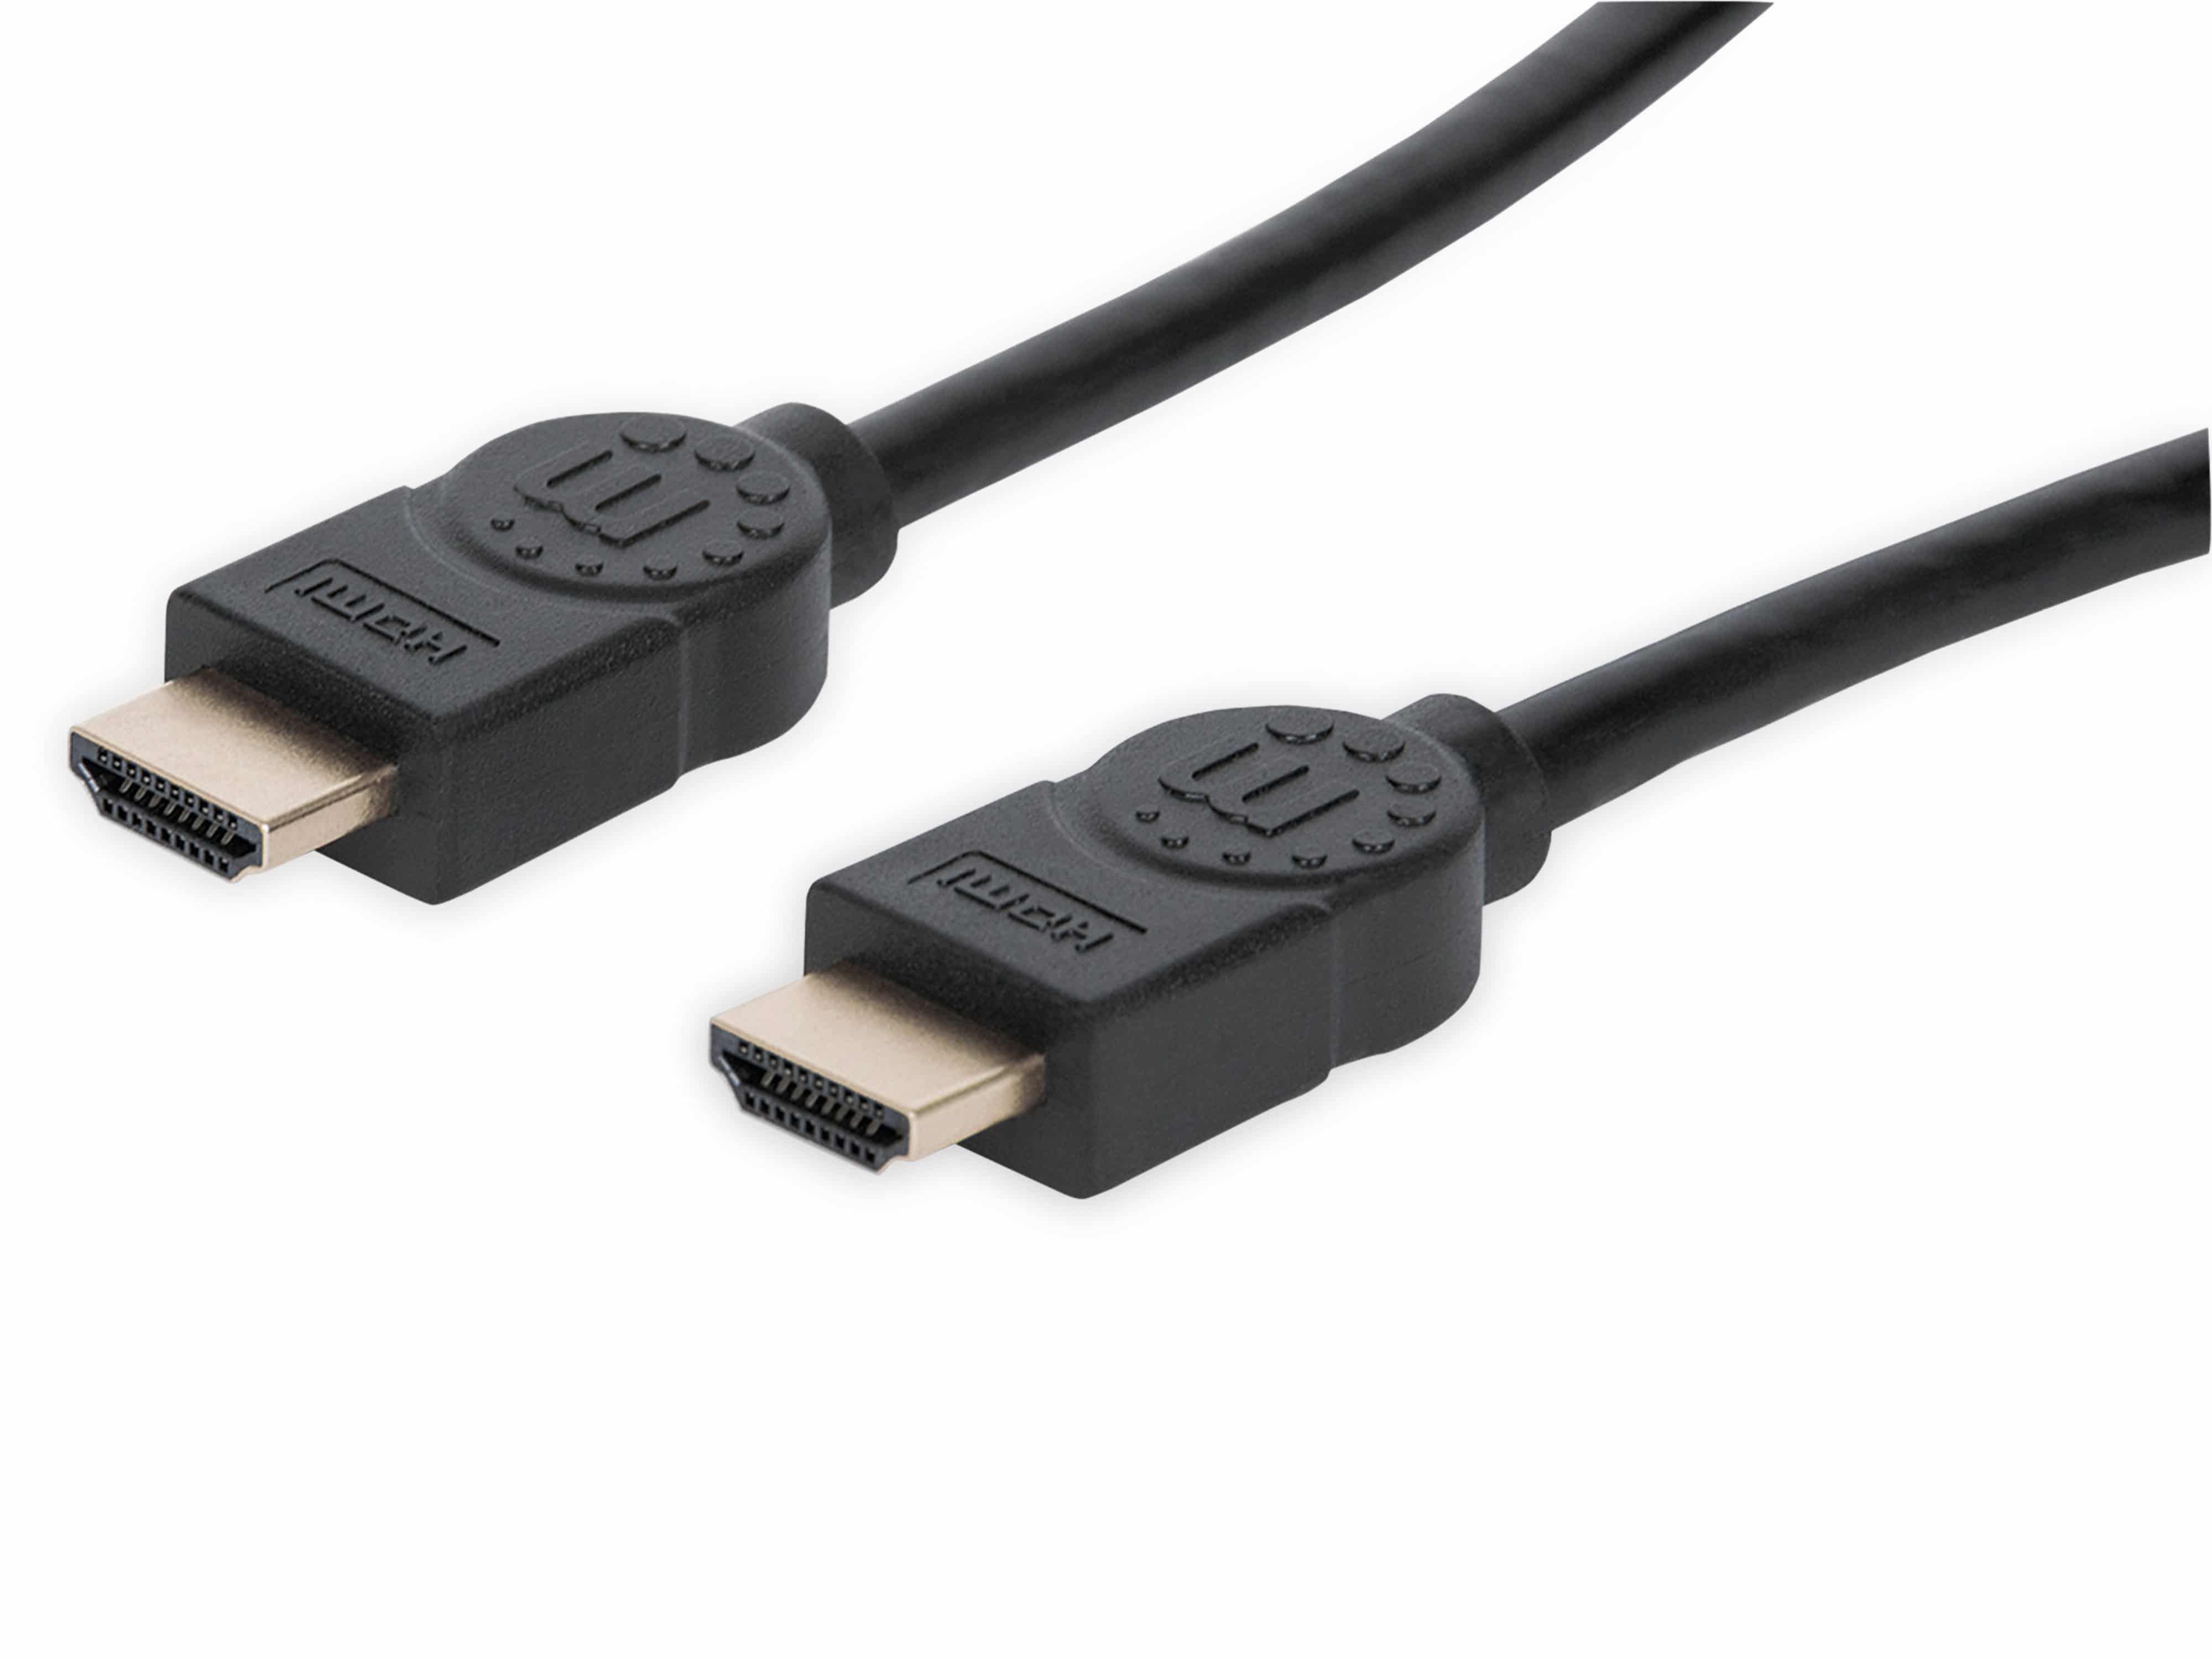 MANHATTAN Premium HDMI-Kabel, 3 m, schwarz